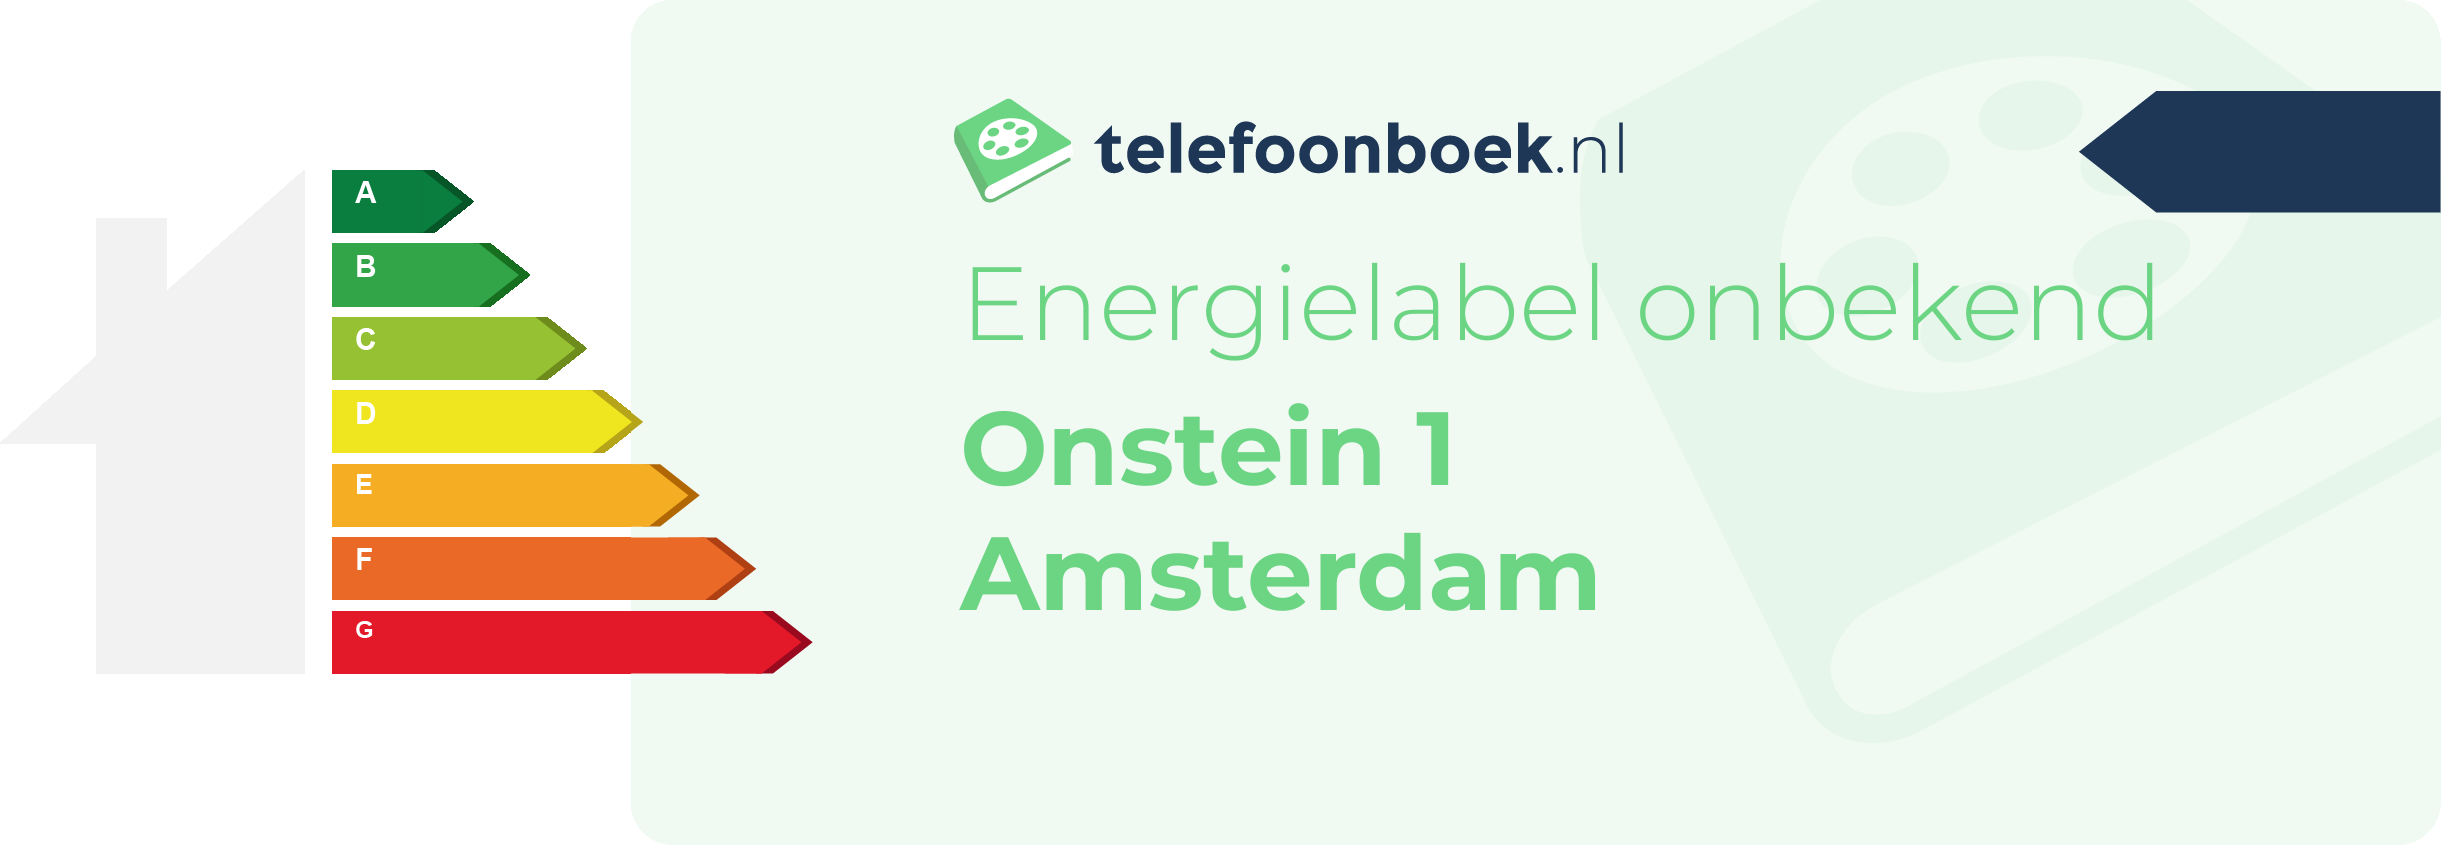 Energielabel Onstein 1 Amsterdam